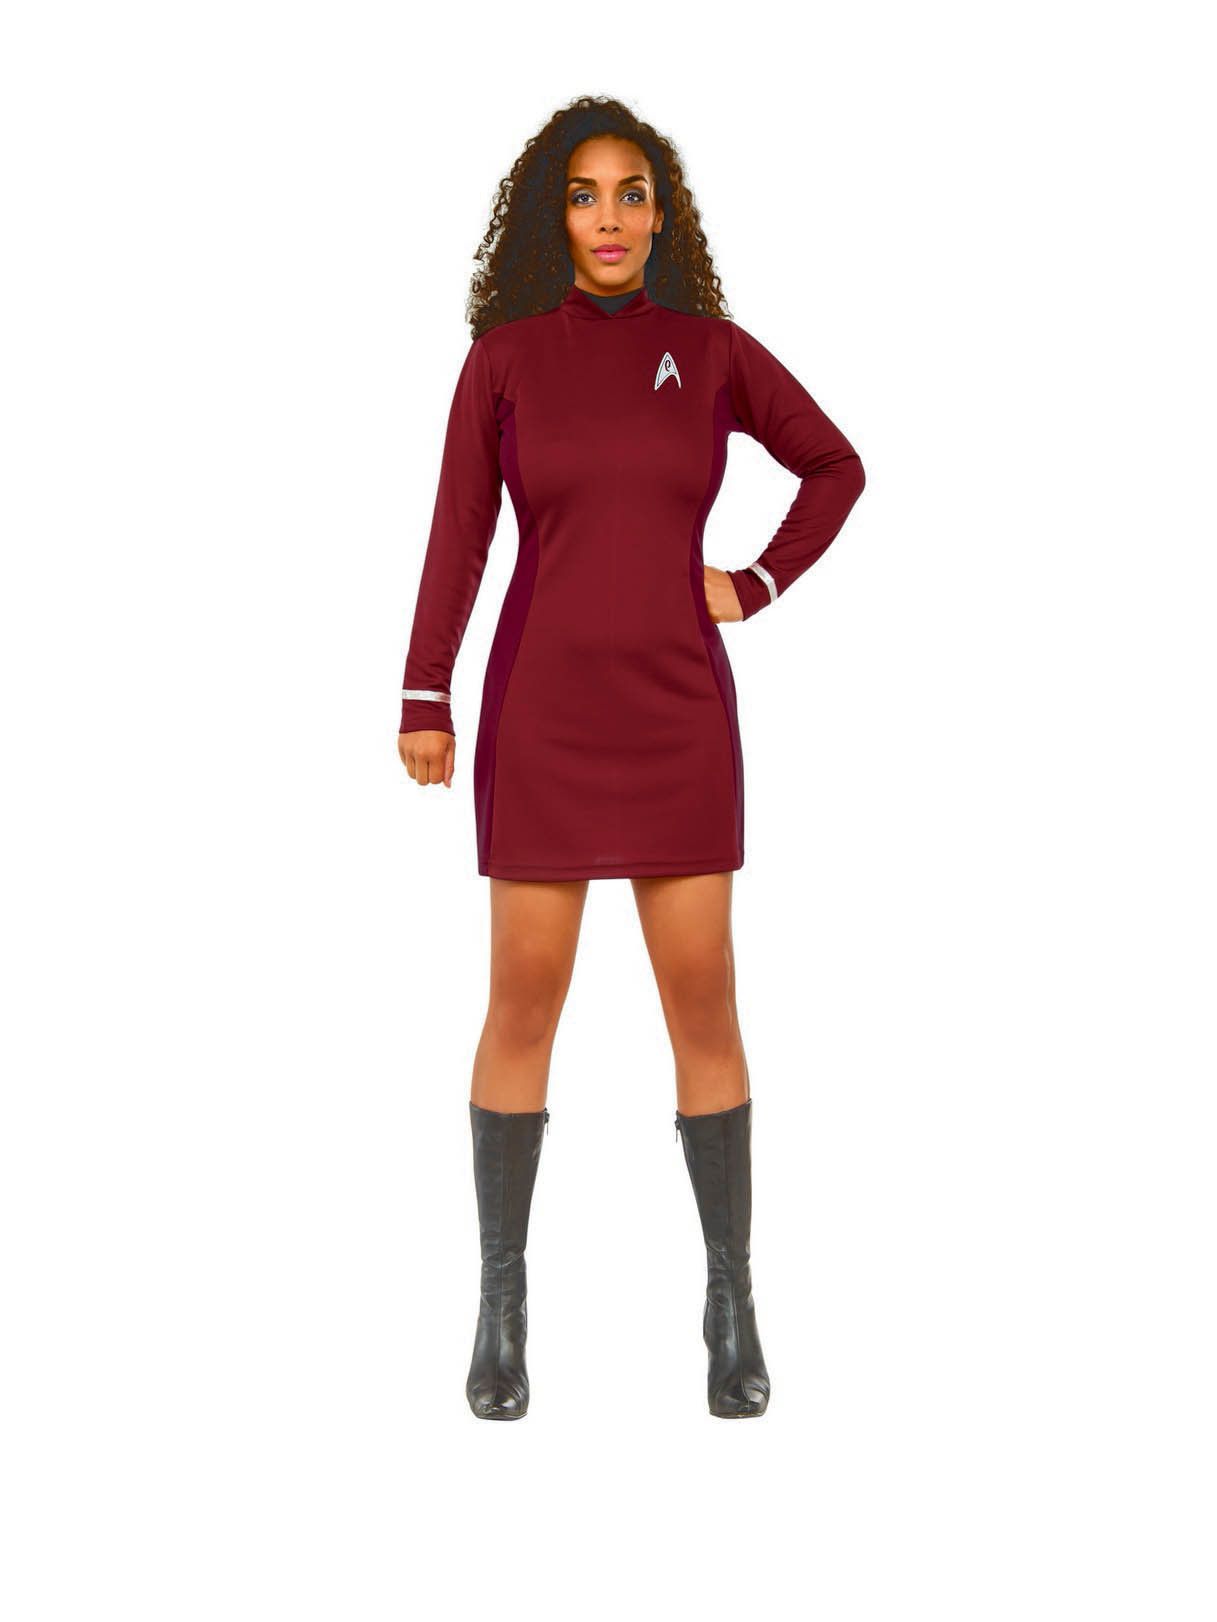 Women's Star Trek Beyond Uhura Costume - costumes.com